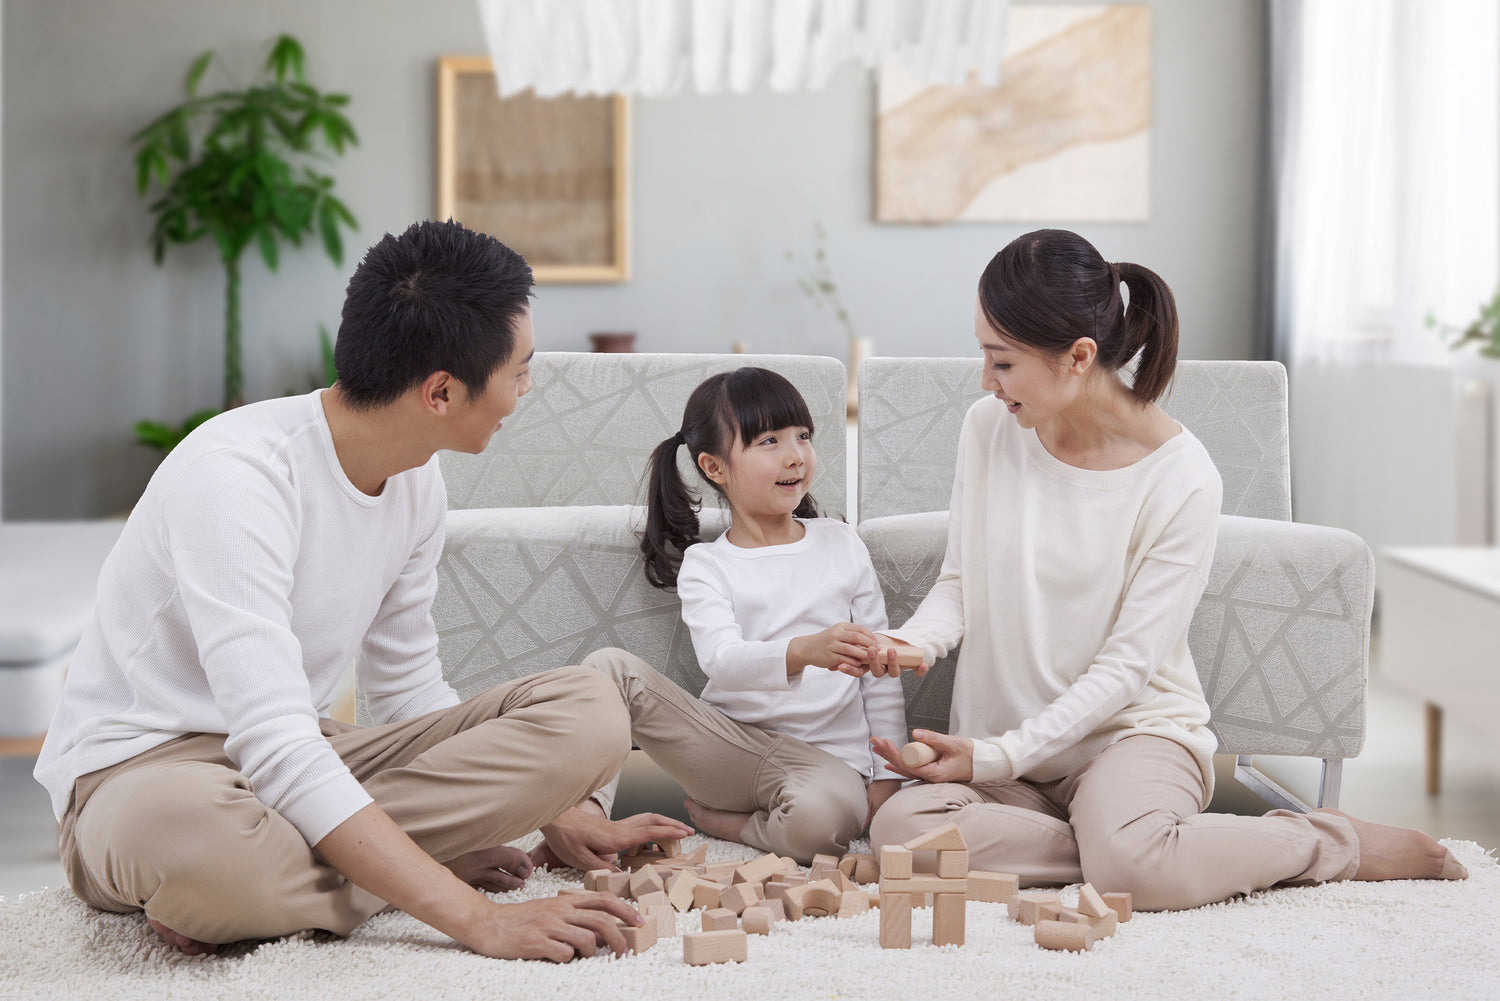 7 Indoor Family Bonding Activities